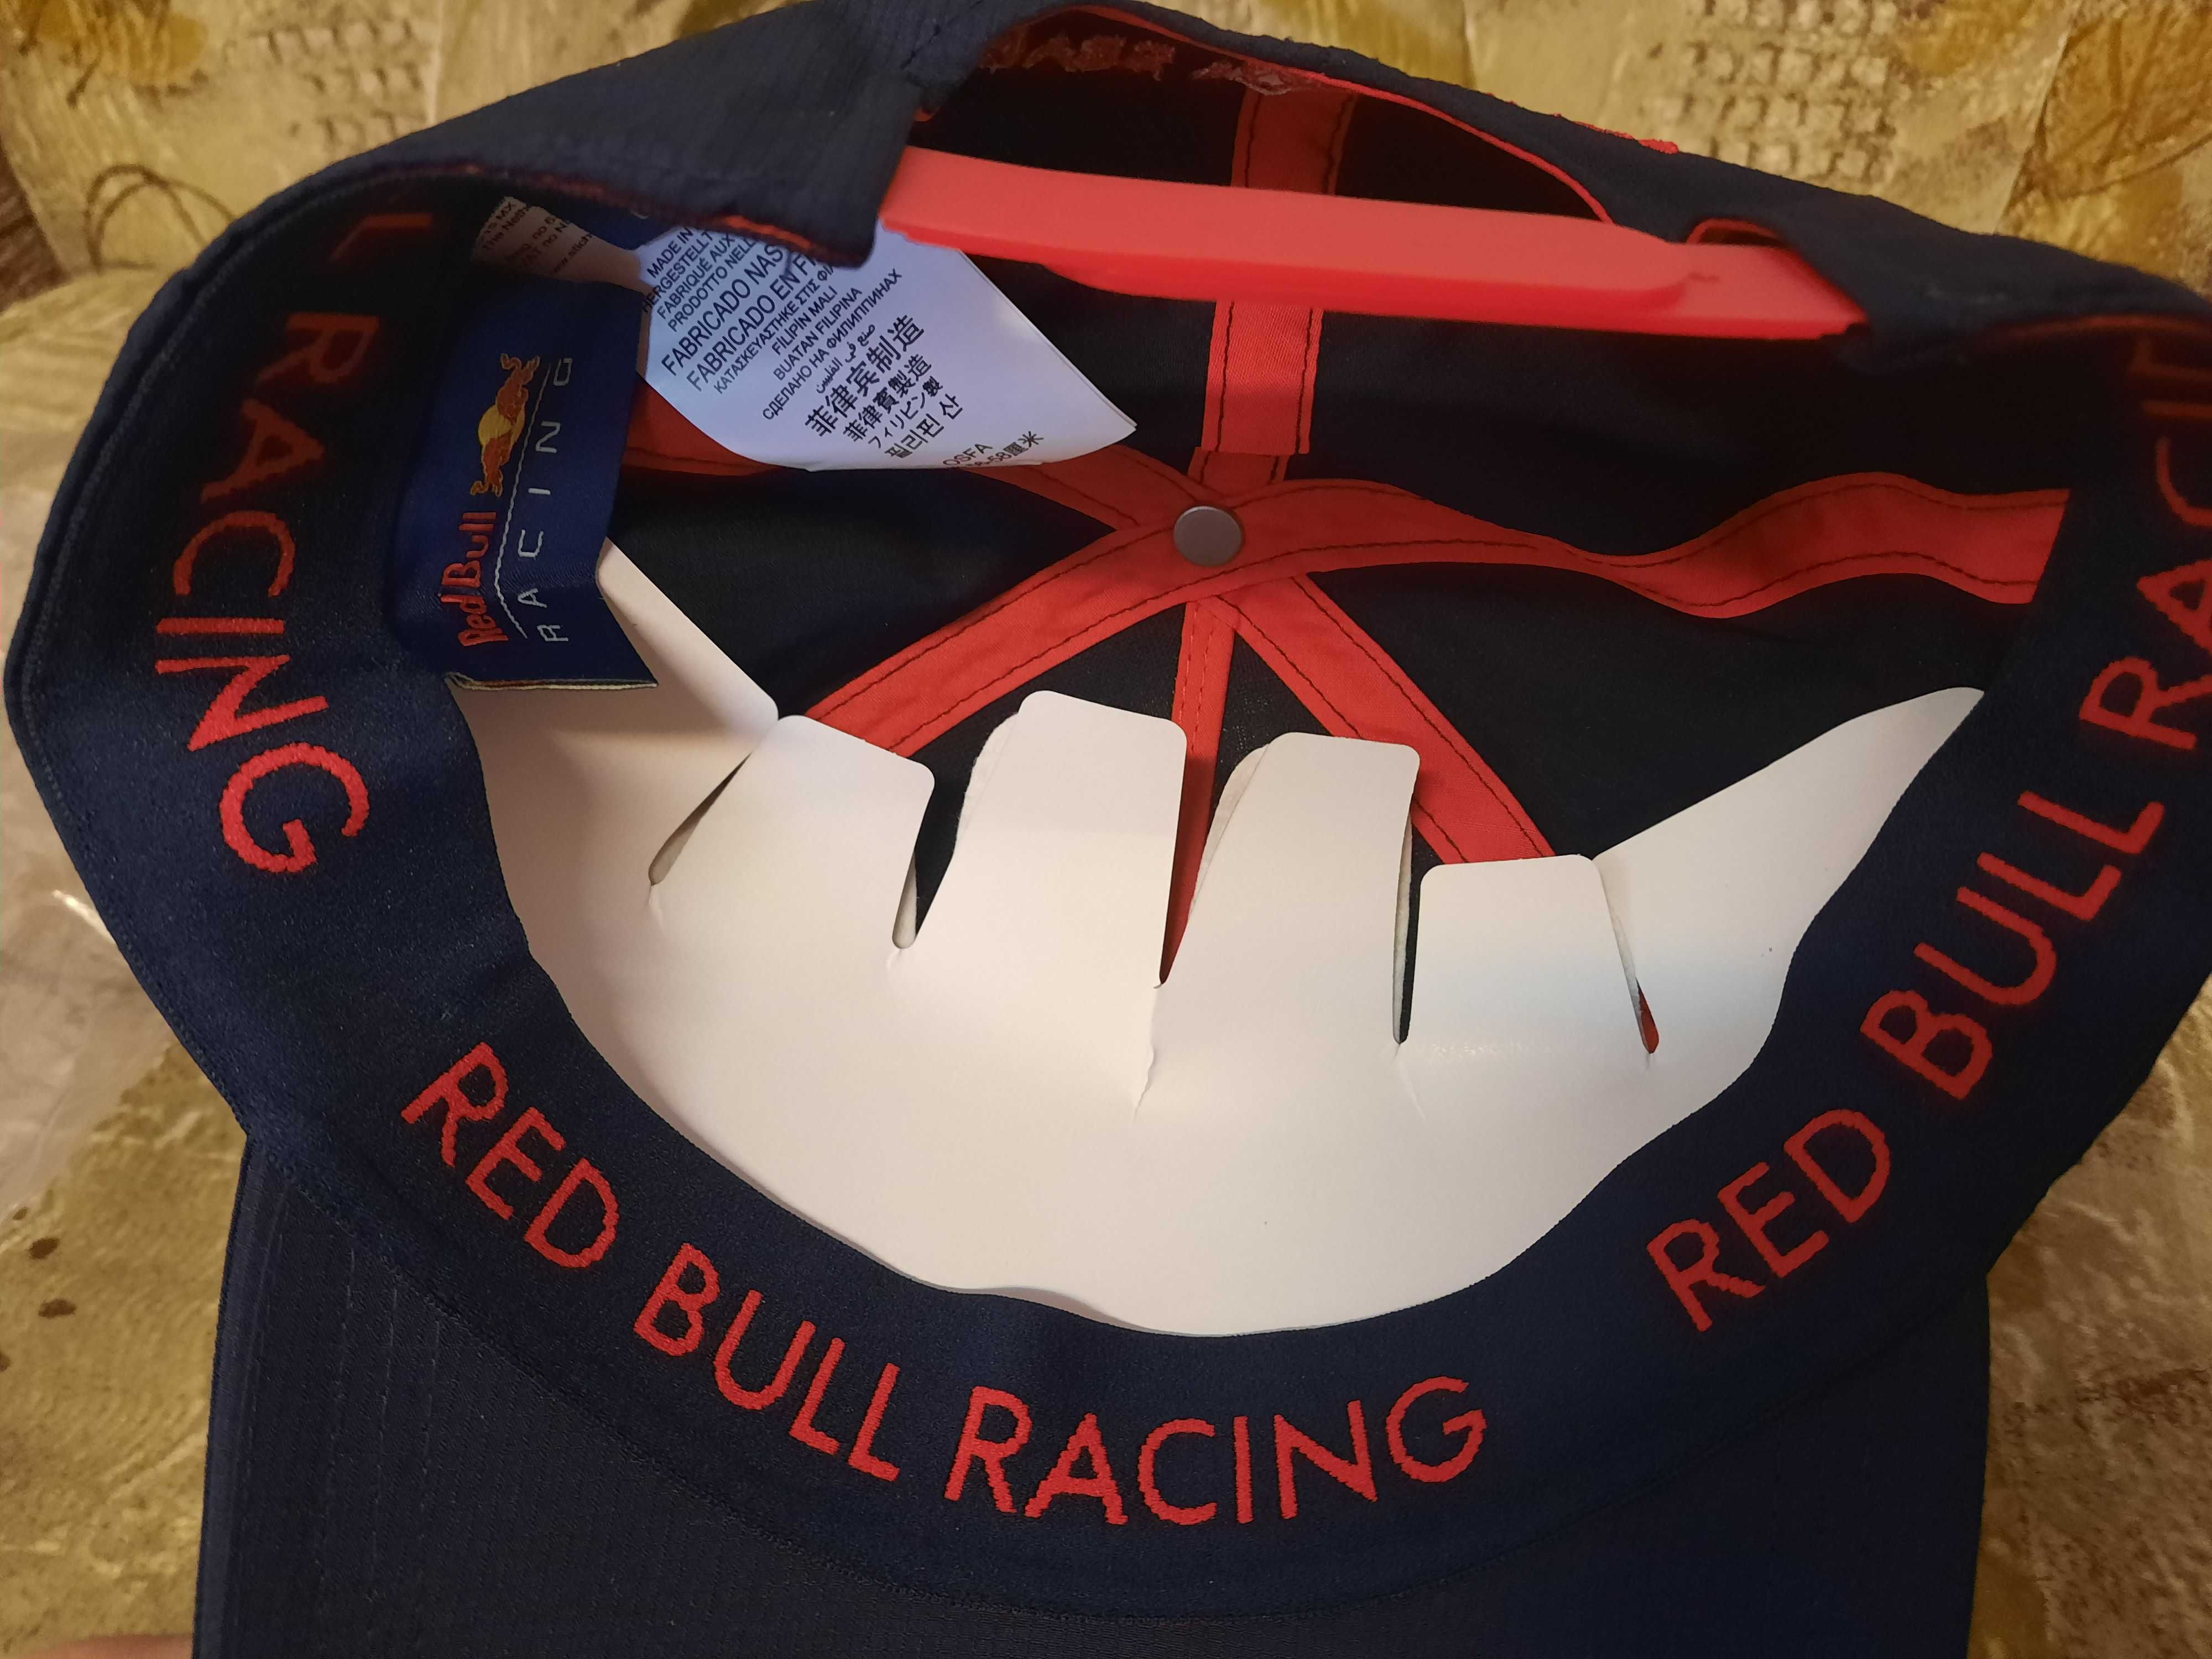 Sapca F1 Red Bull Team Wear (Negociabil)